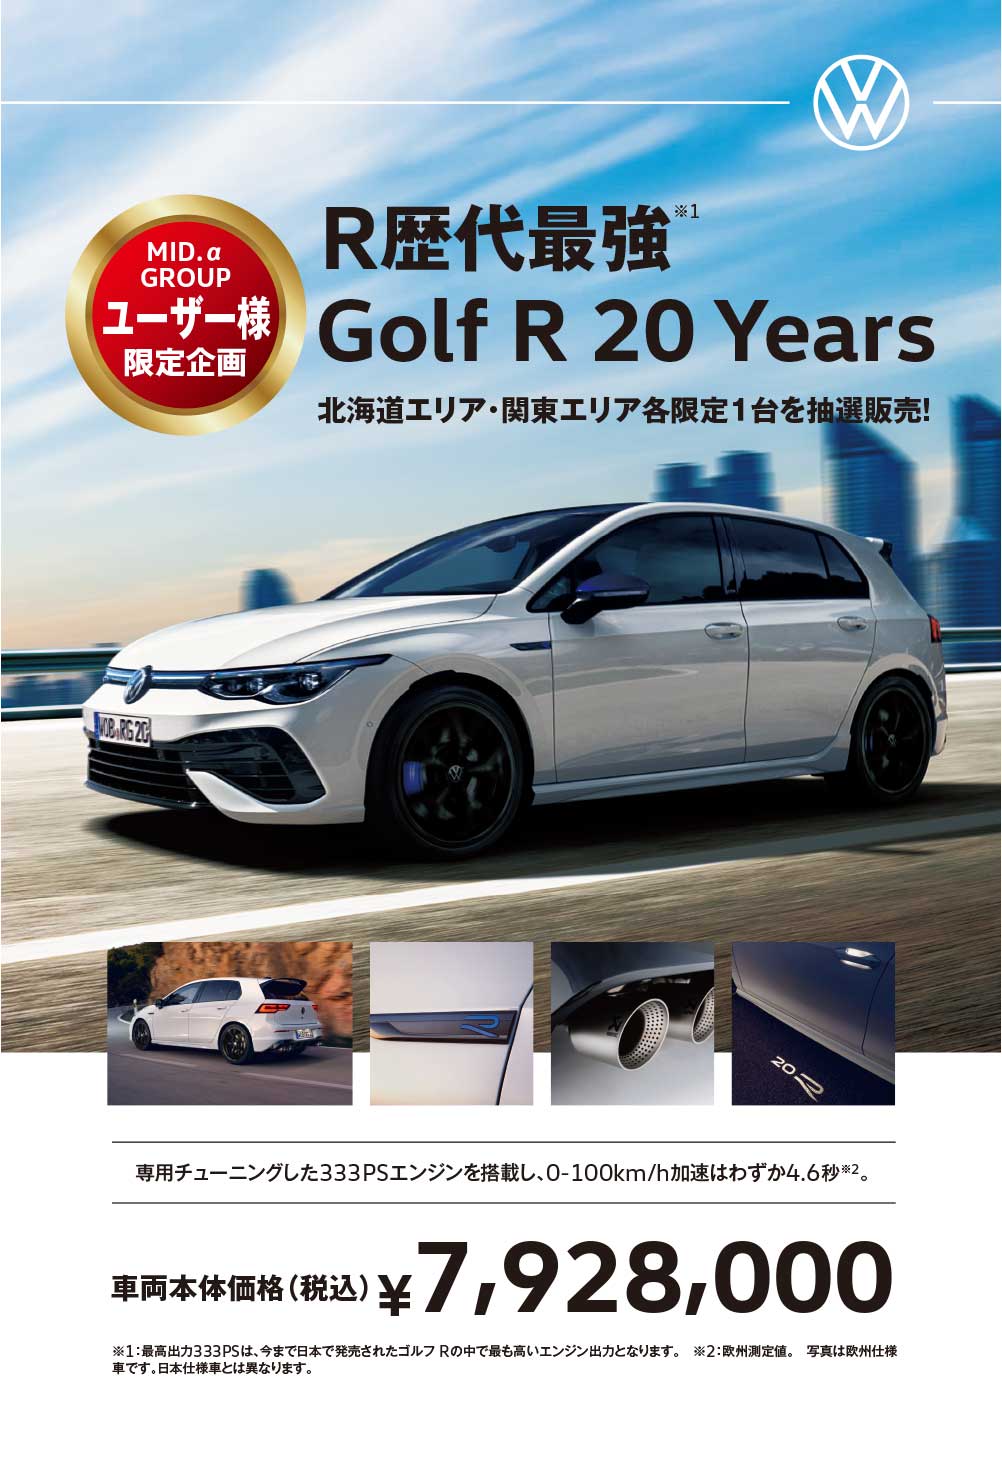 Golf R 20 Years 抽選販売